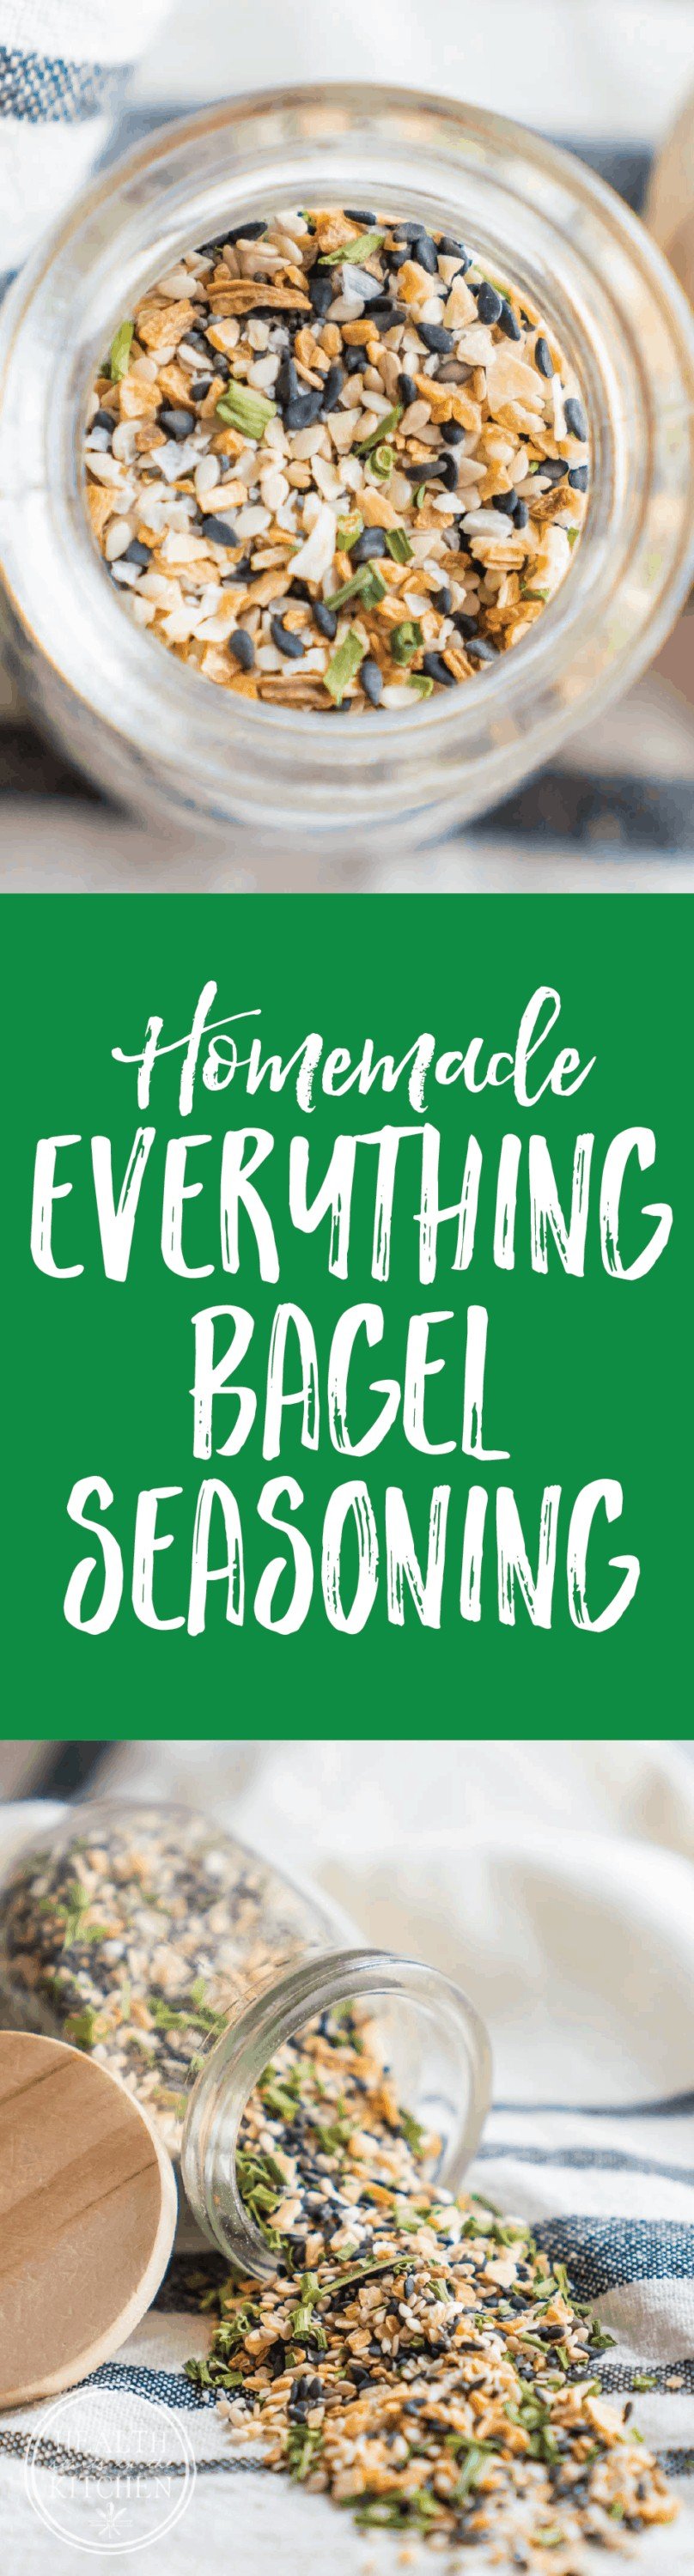 Homemade Everything Bagel Seasoning